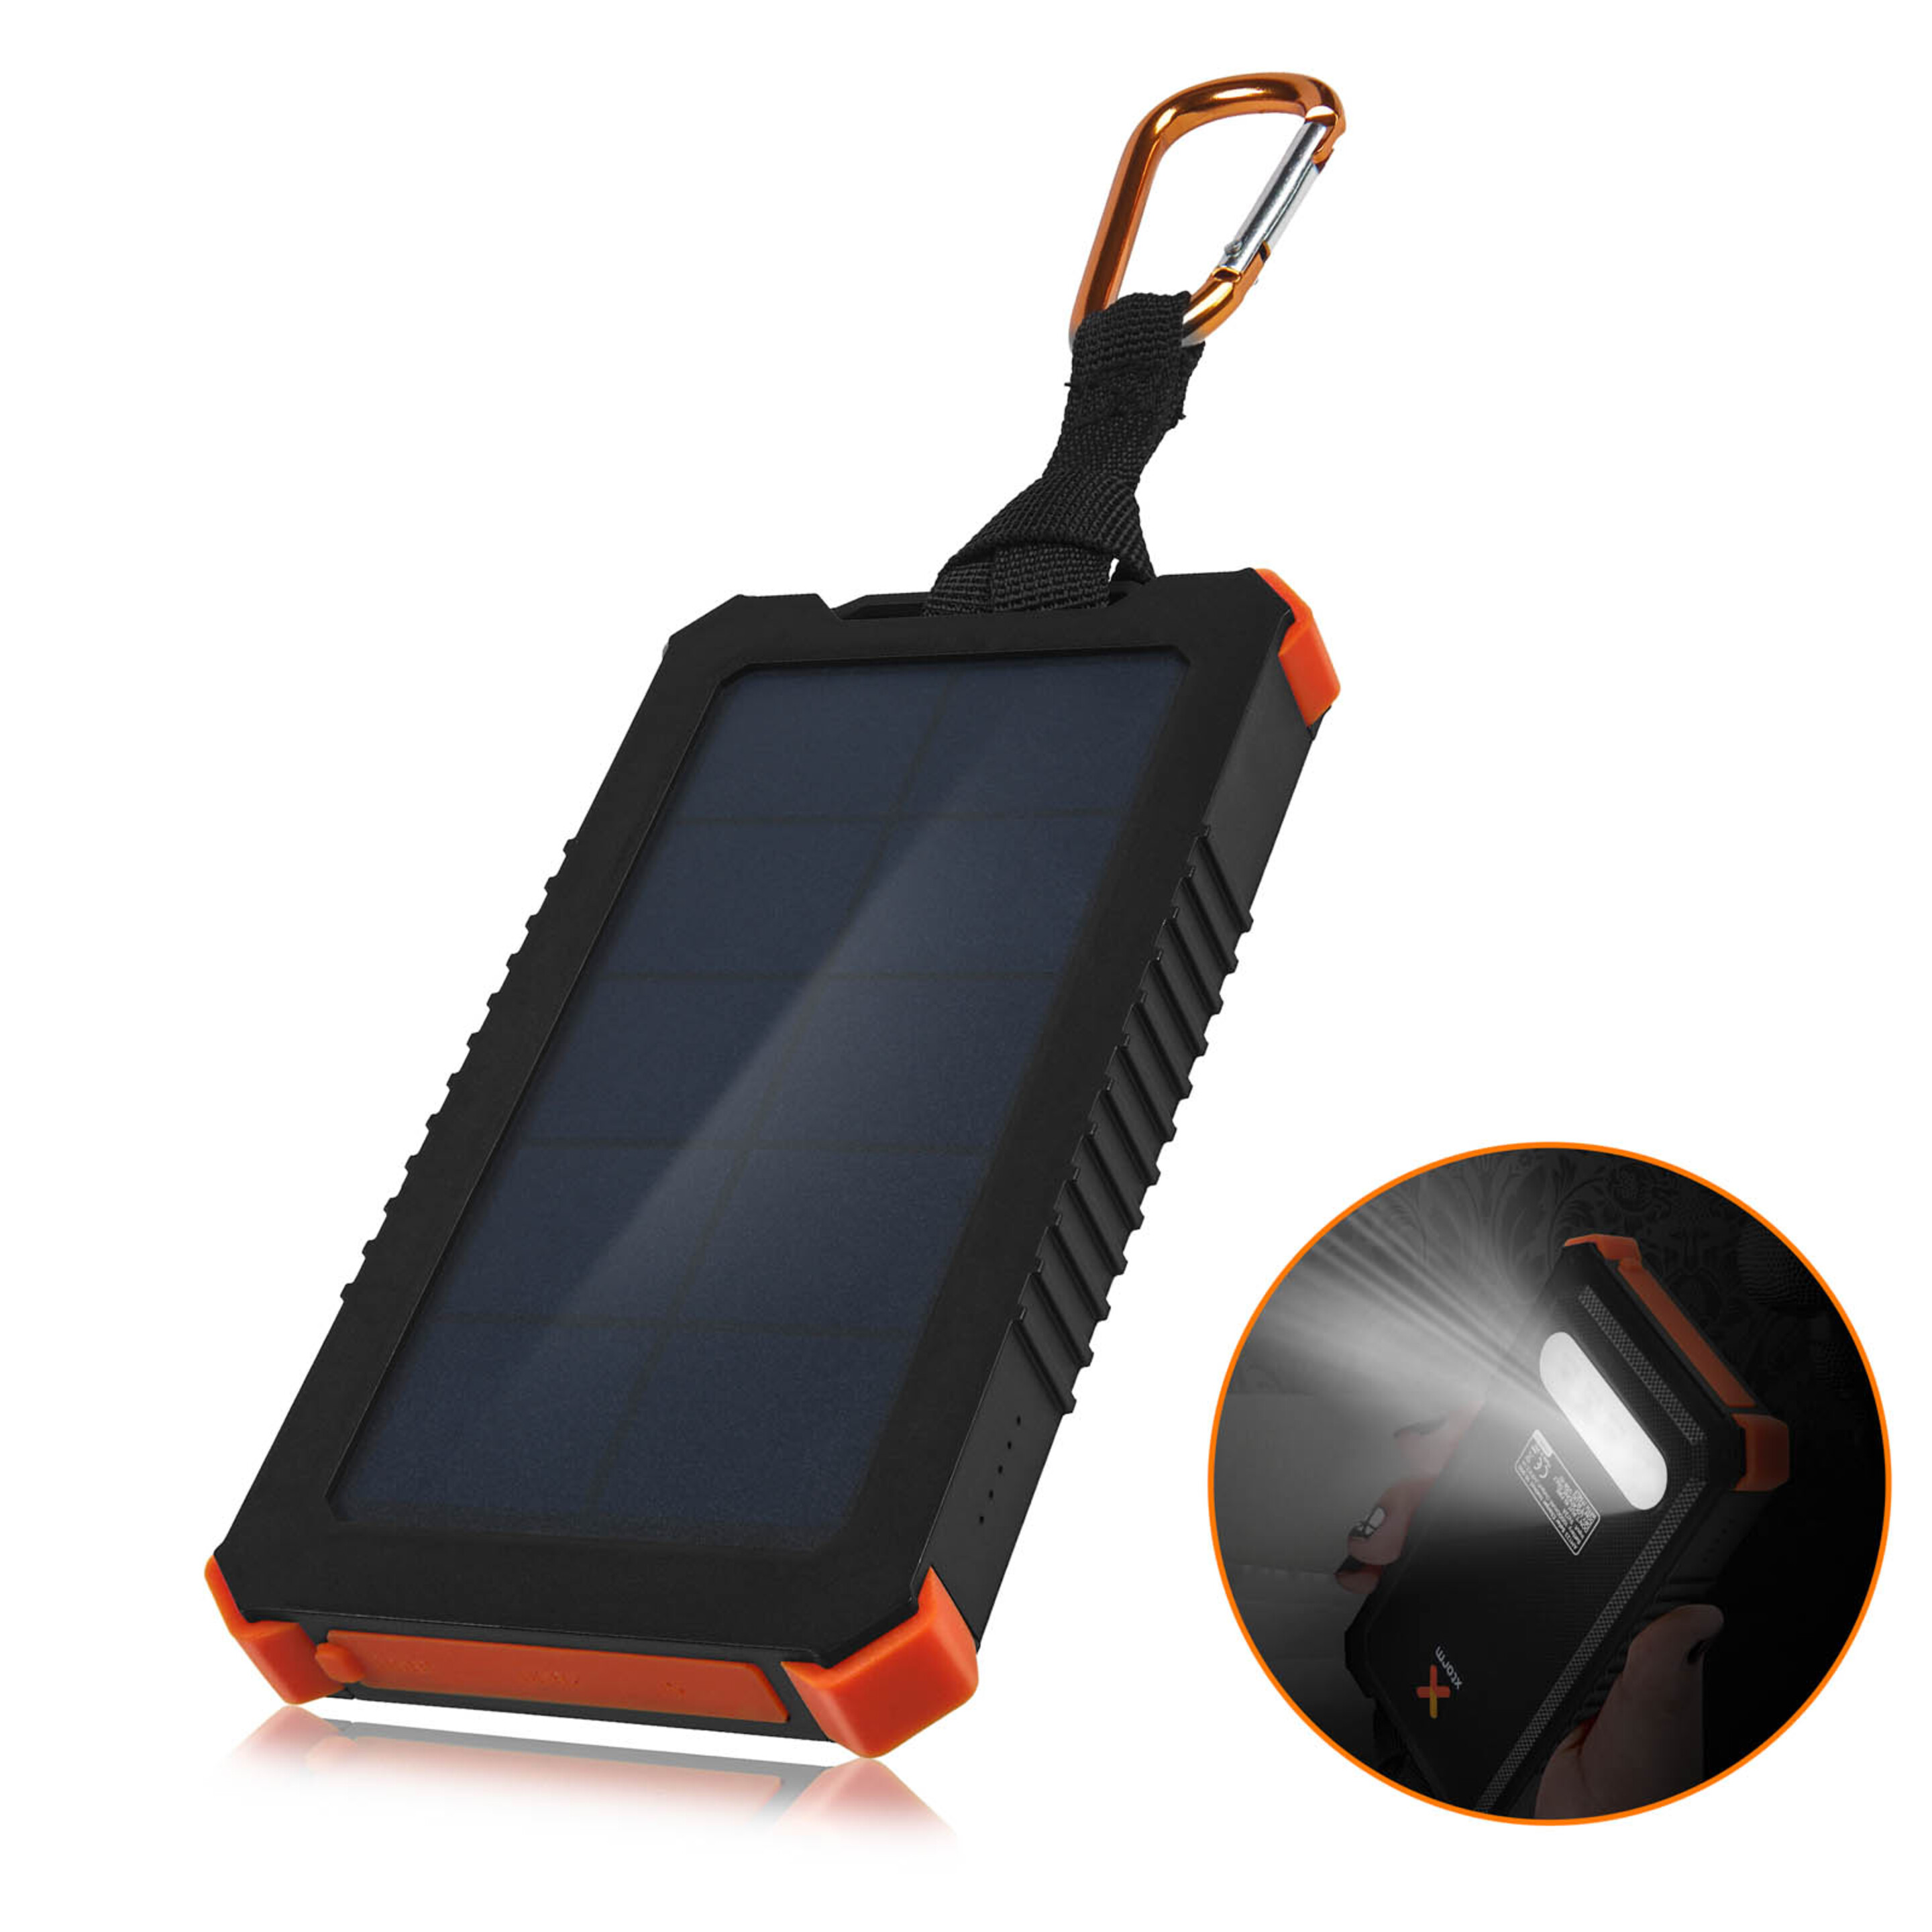 Batería Solar Externa 2x Usb 2.1a 10000mah Ipx4 Resistente Xtorm Instinct